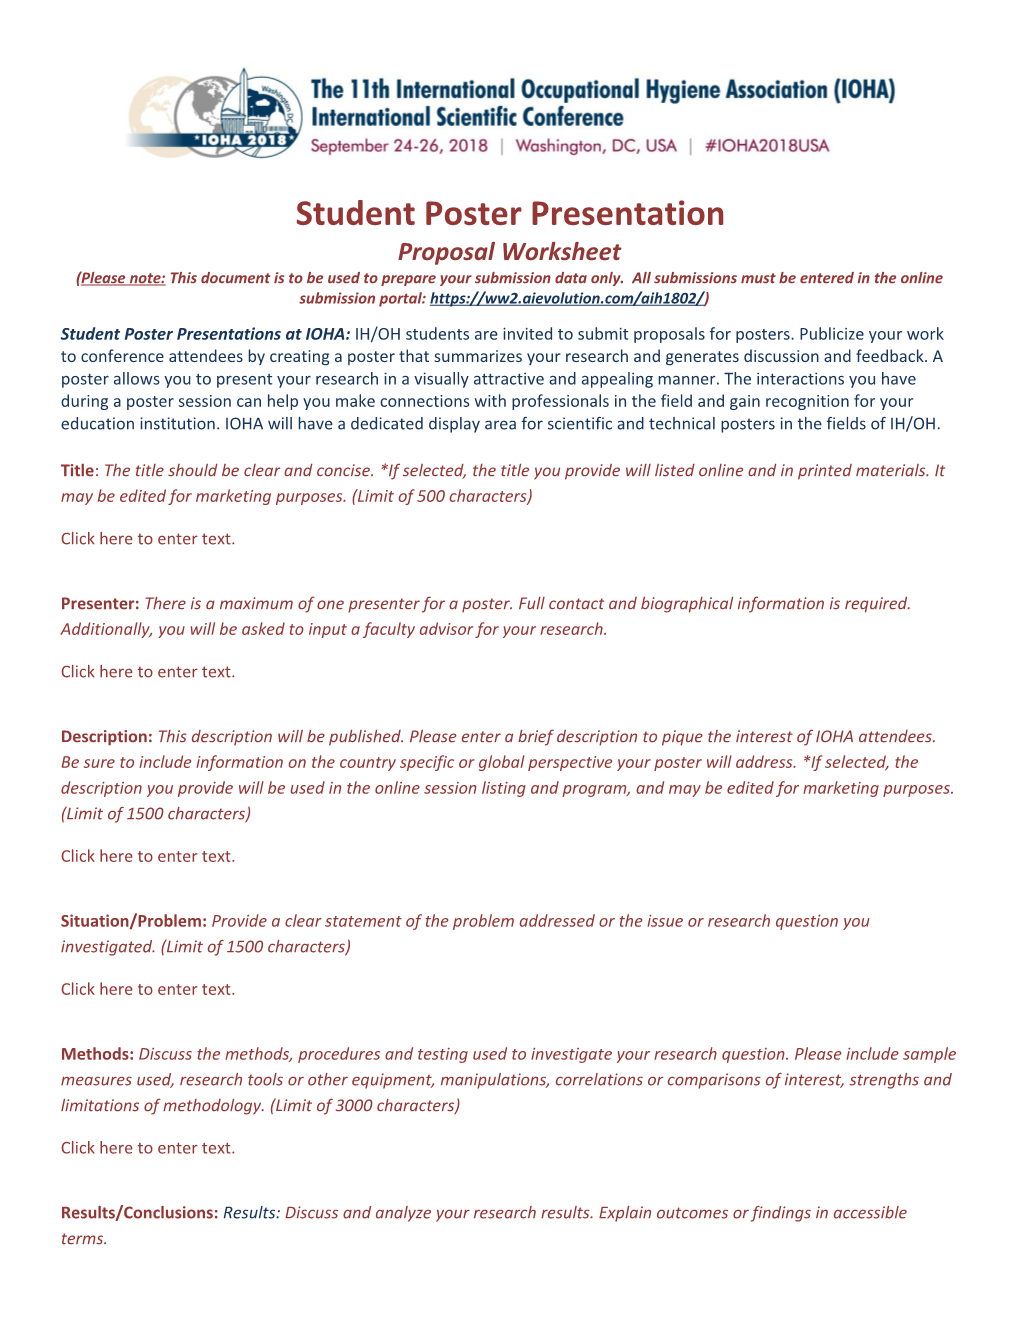 Student Poster Presentation - Worksheet